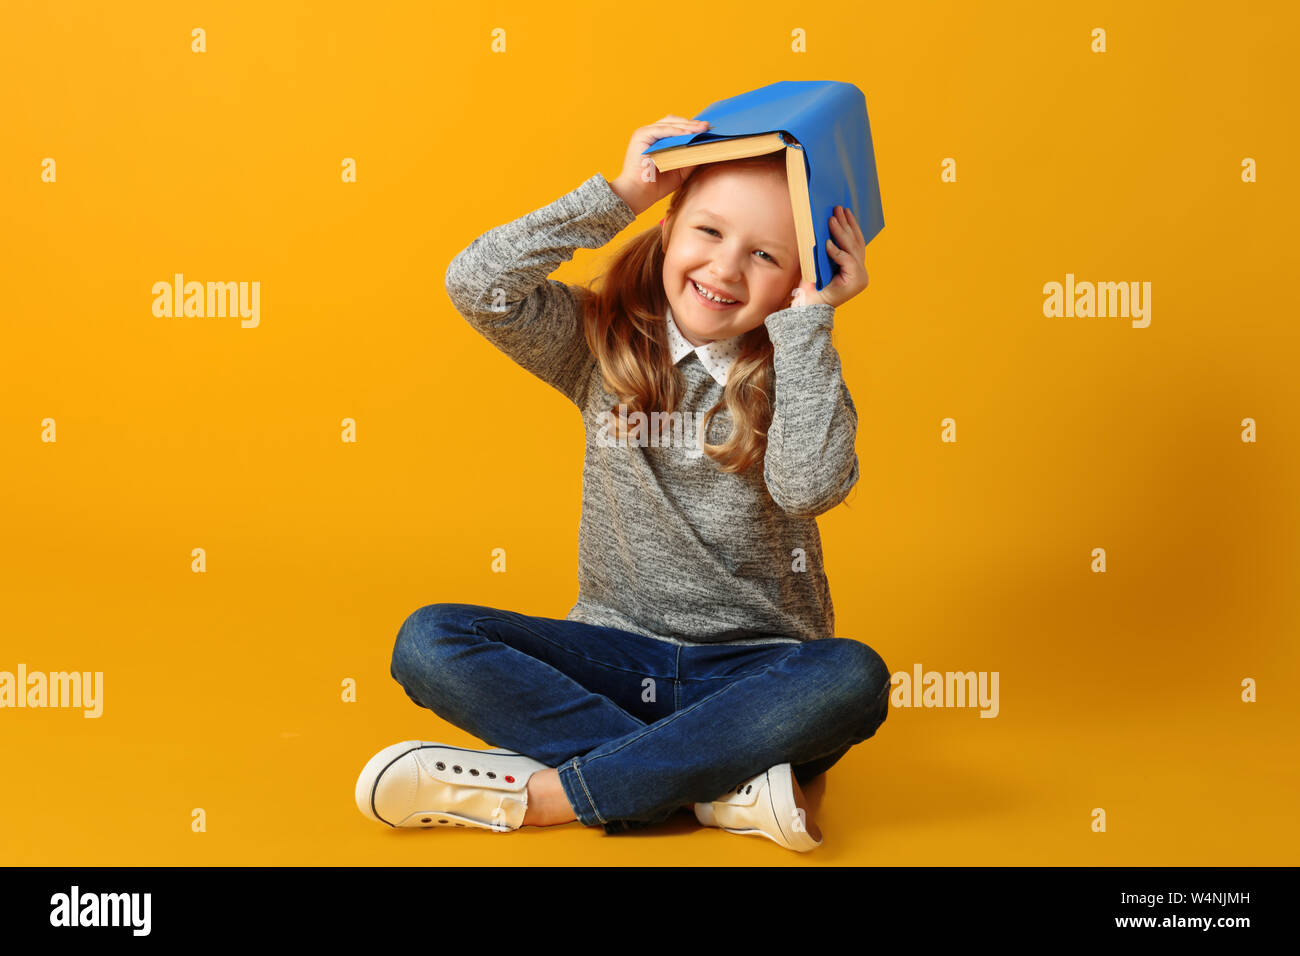 Jolie petite fille joyeuse étudiant est assis sur le plancher avec un livre sur la tête. Le concept d'éducation et de l'école. Fond jaune. Studi Banque D'Images